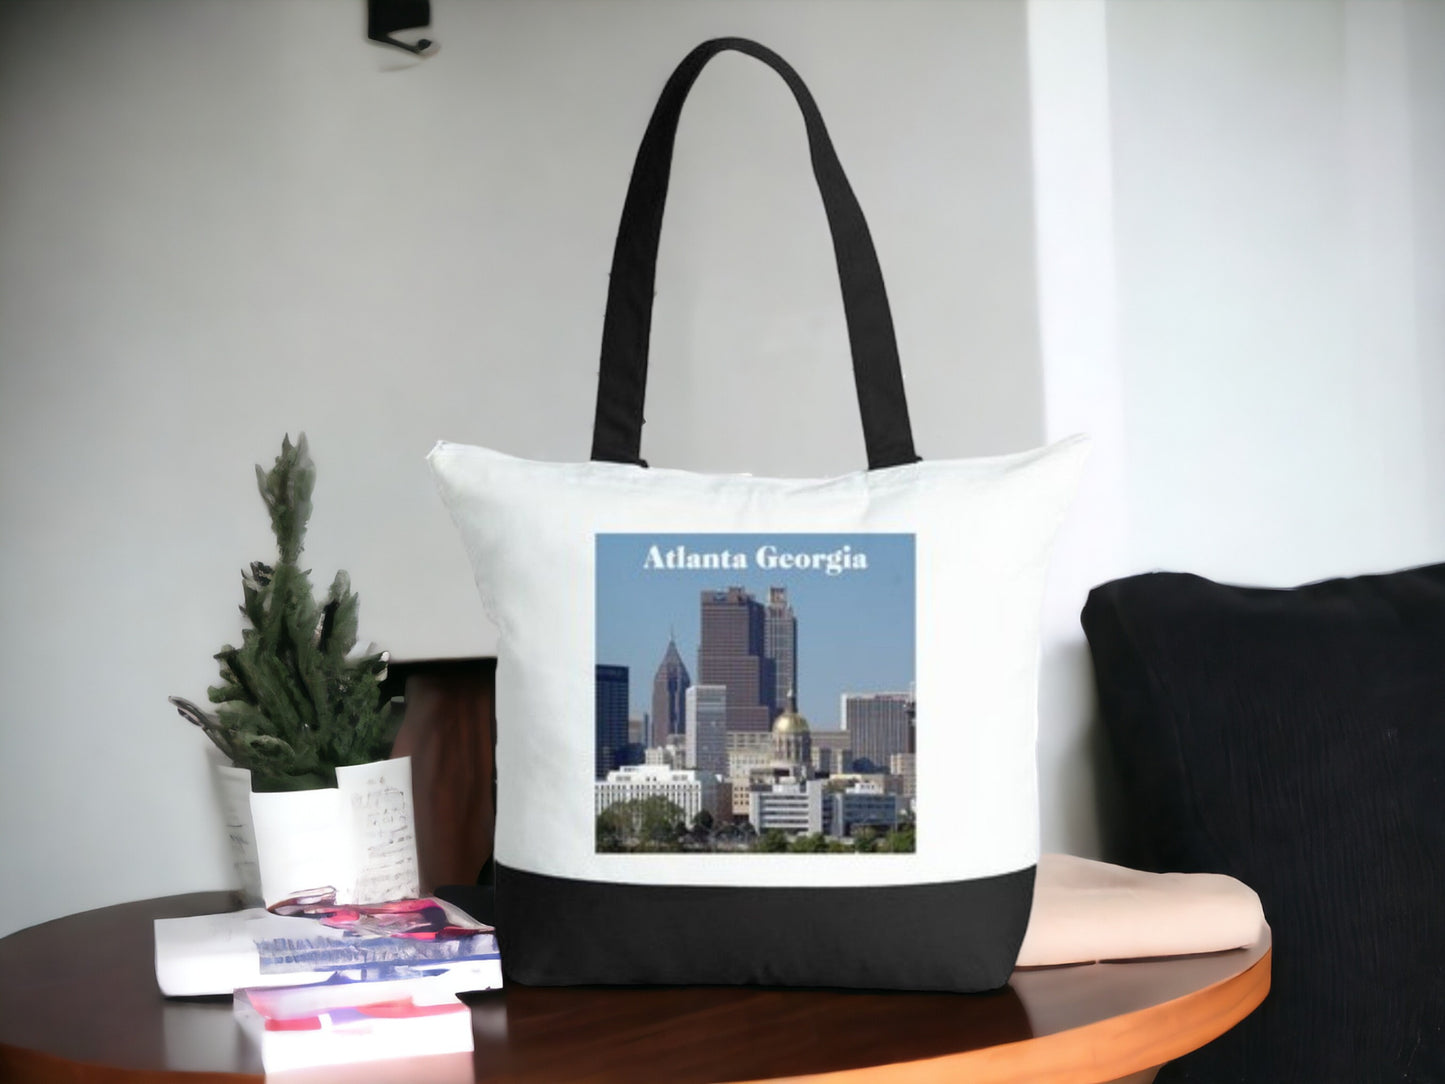 Atlanta Georgia Tote Bag